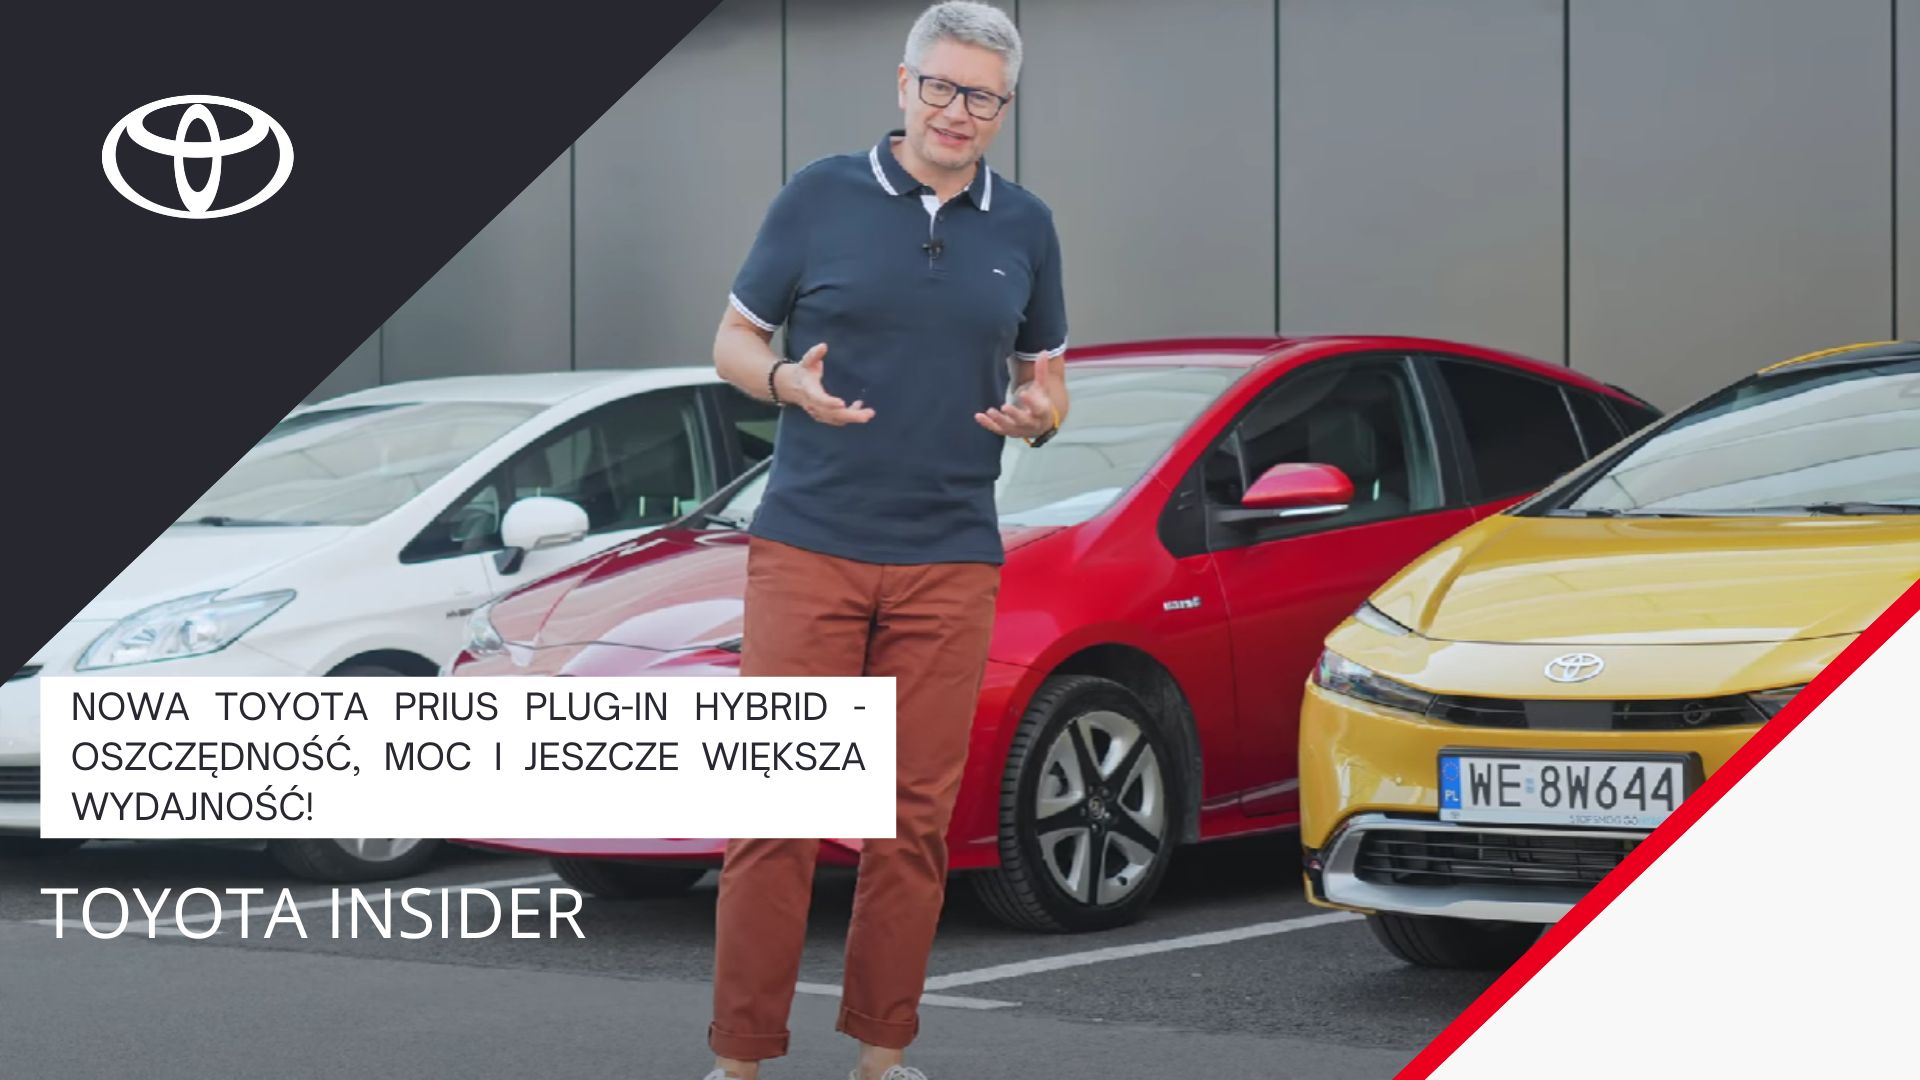 Nowa Toyota Prius Plug-in Hybrid - oszczędność, moc i jeszcze większa wydajność! | Toyota Insider